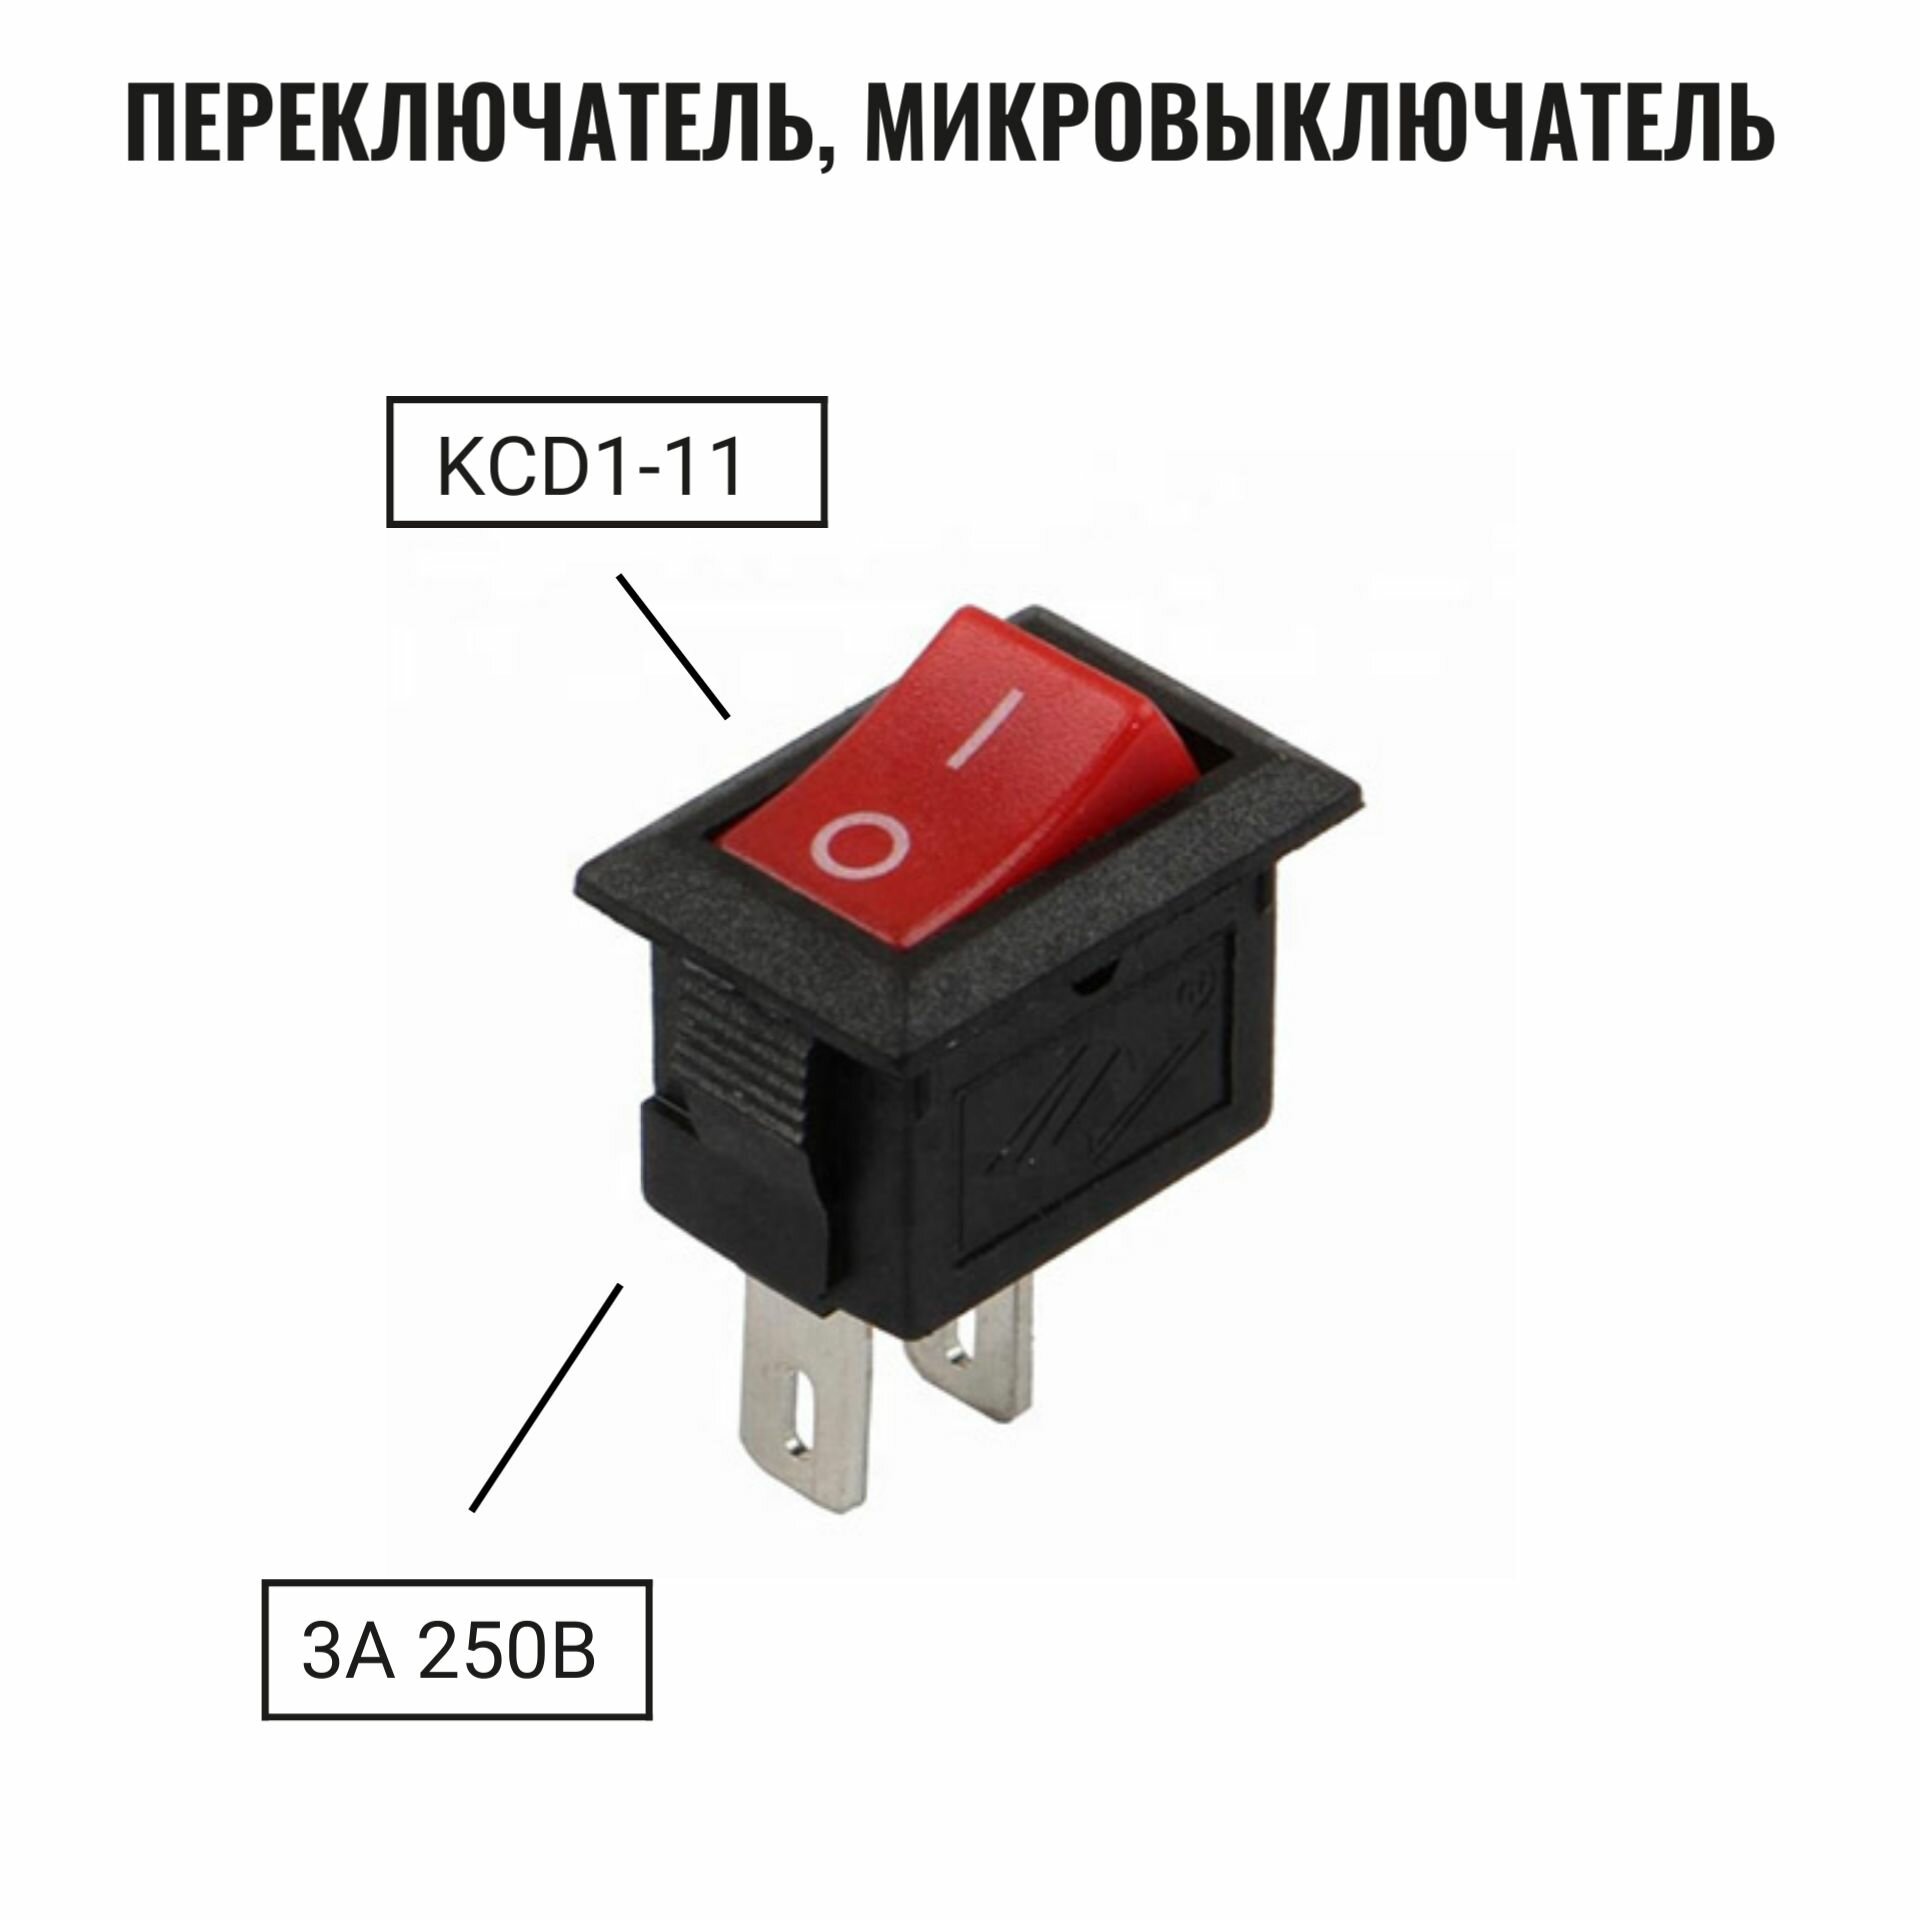 Микровыключатель кнопка KCD1-11